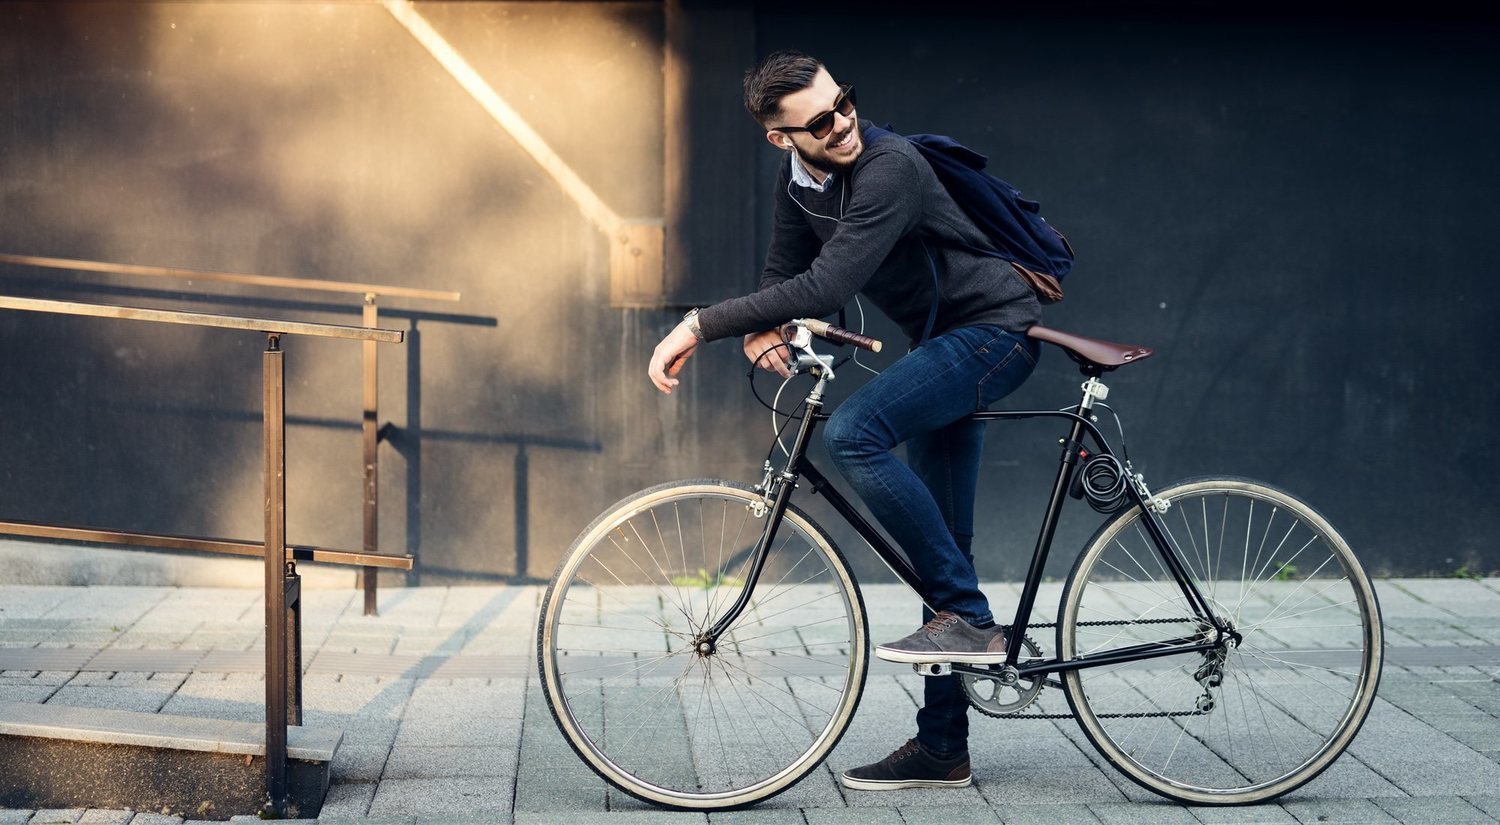 La odisea de ir al trabajo en bicicleta: problemas y trucos